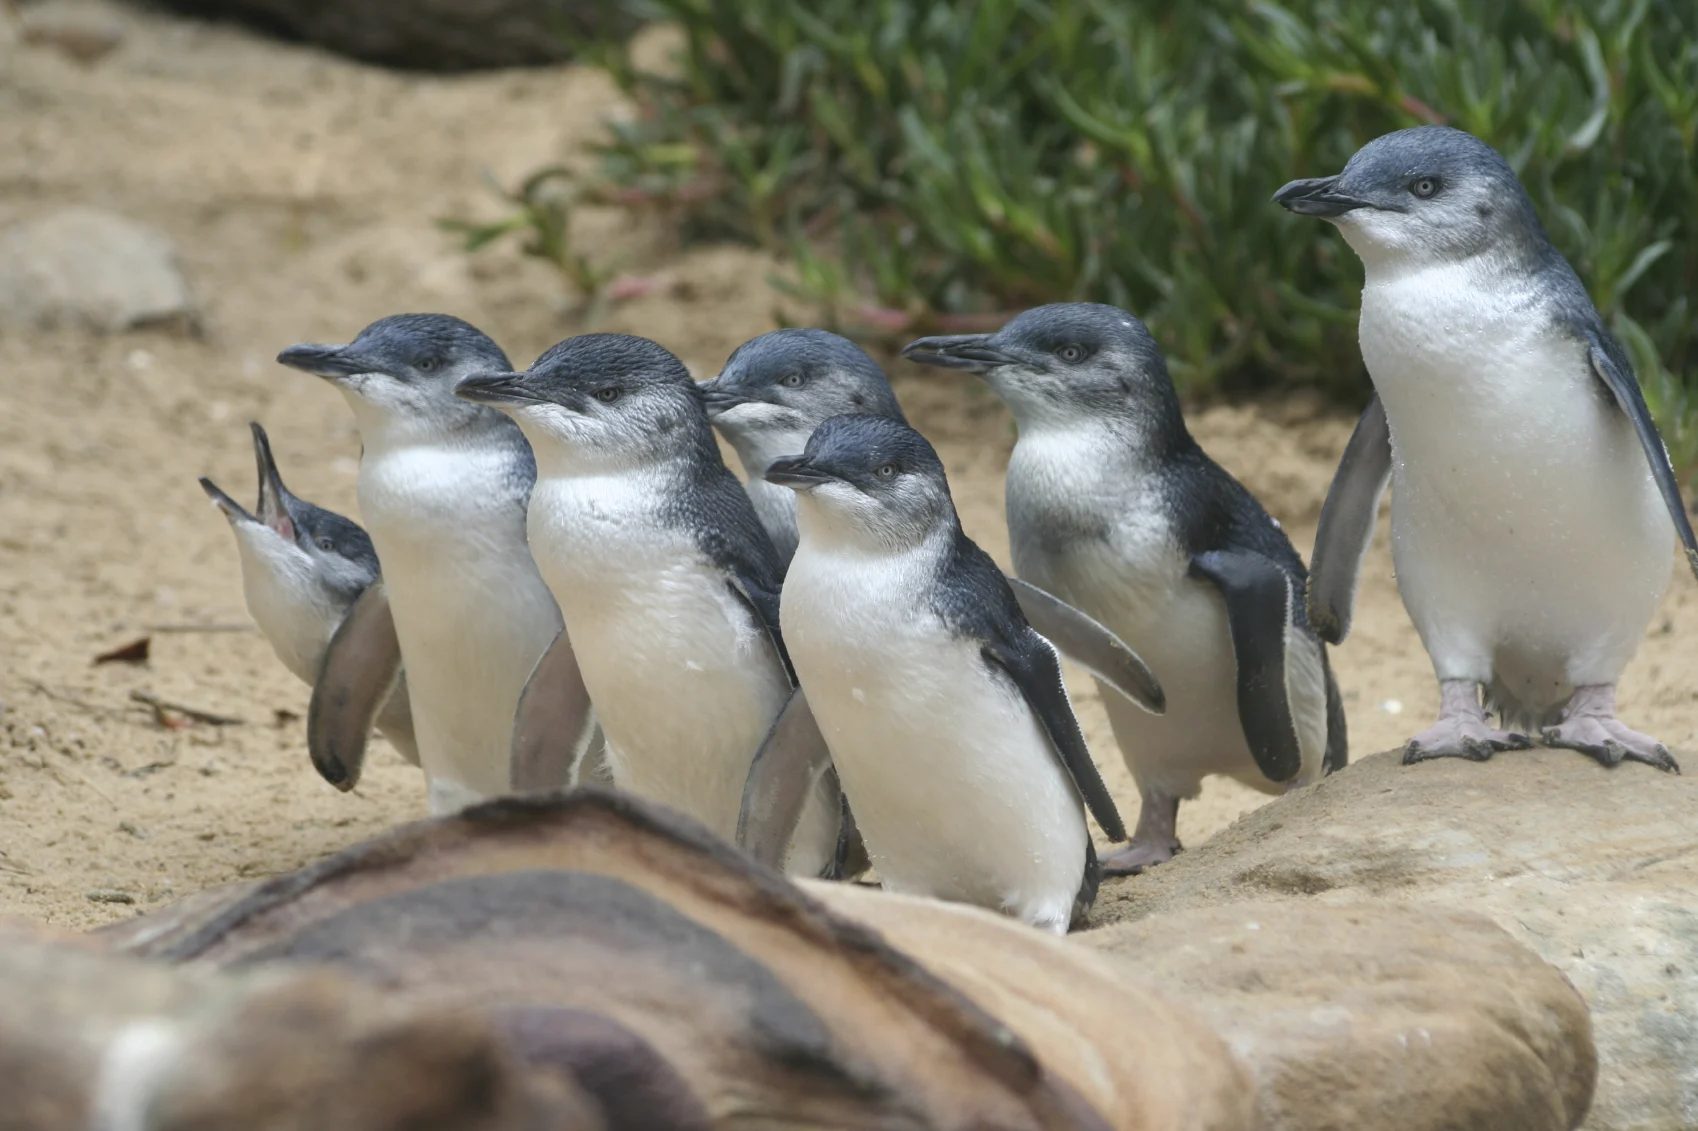 Six penguins standing near a rock